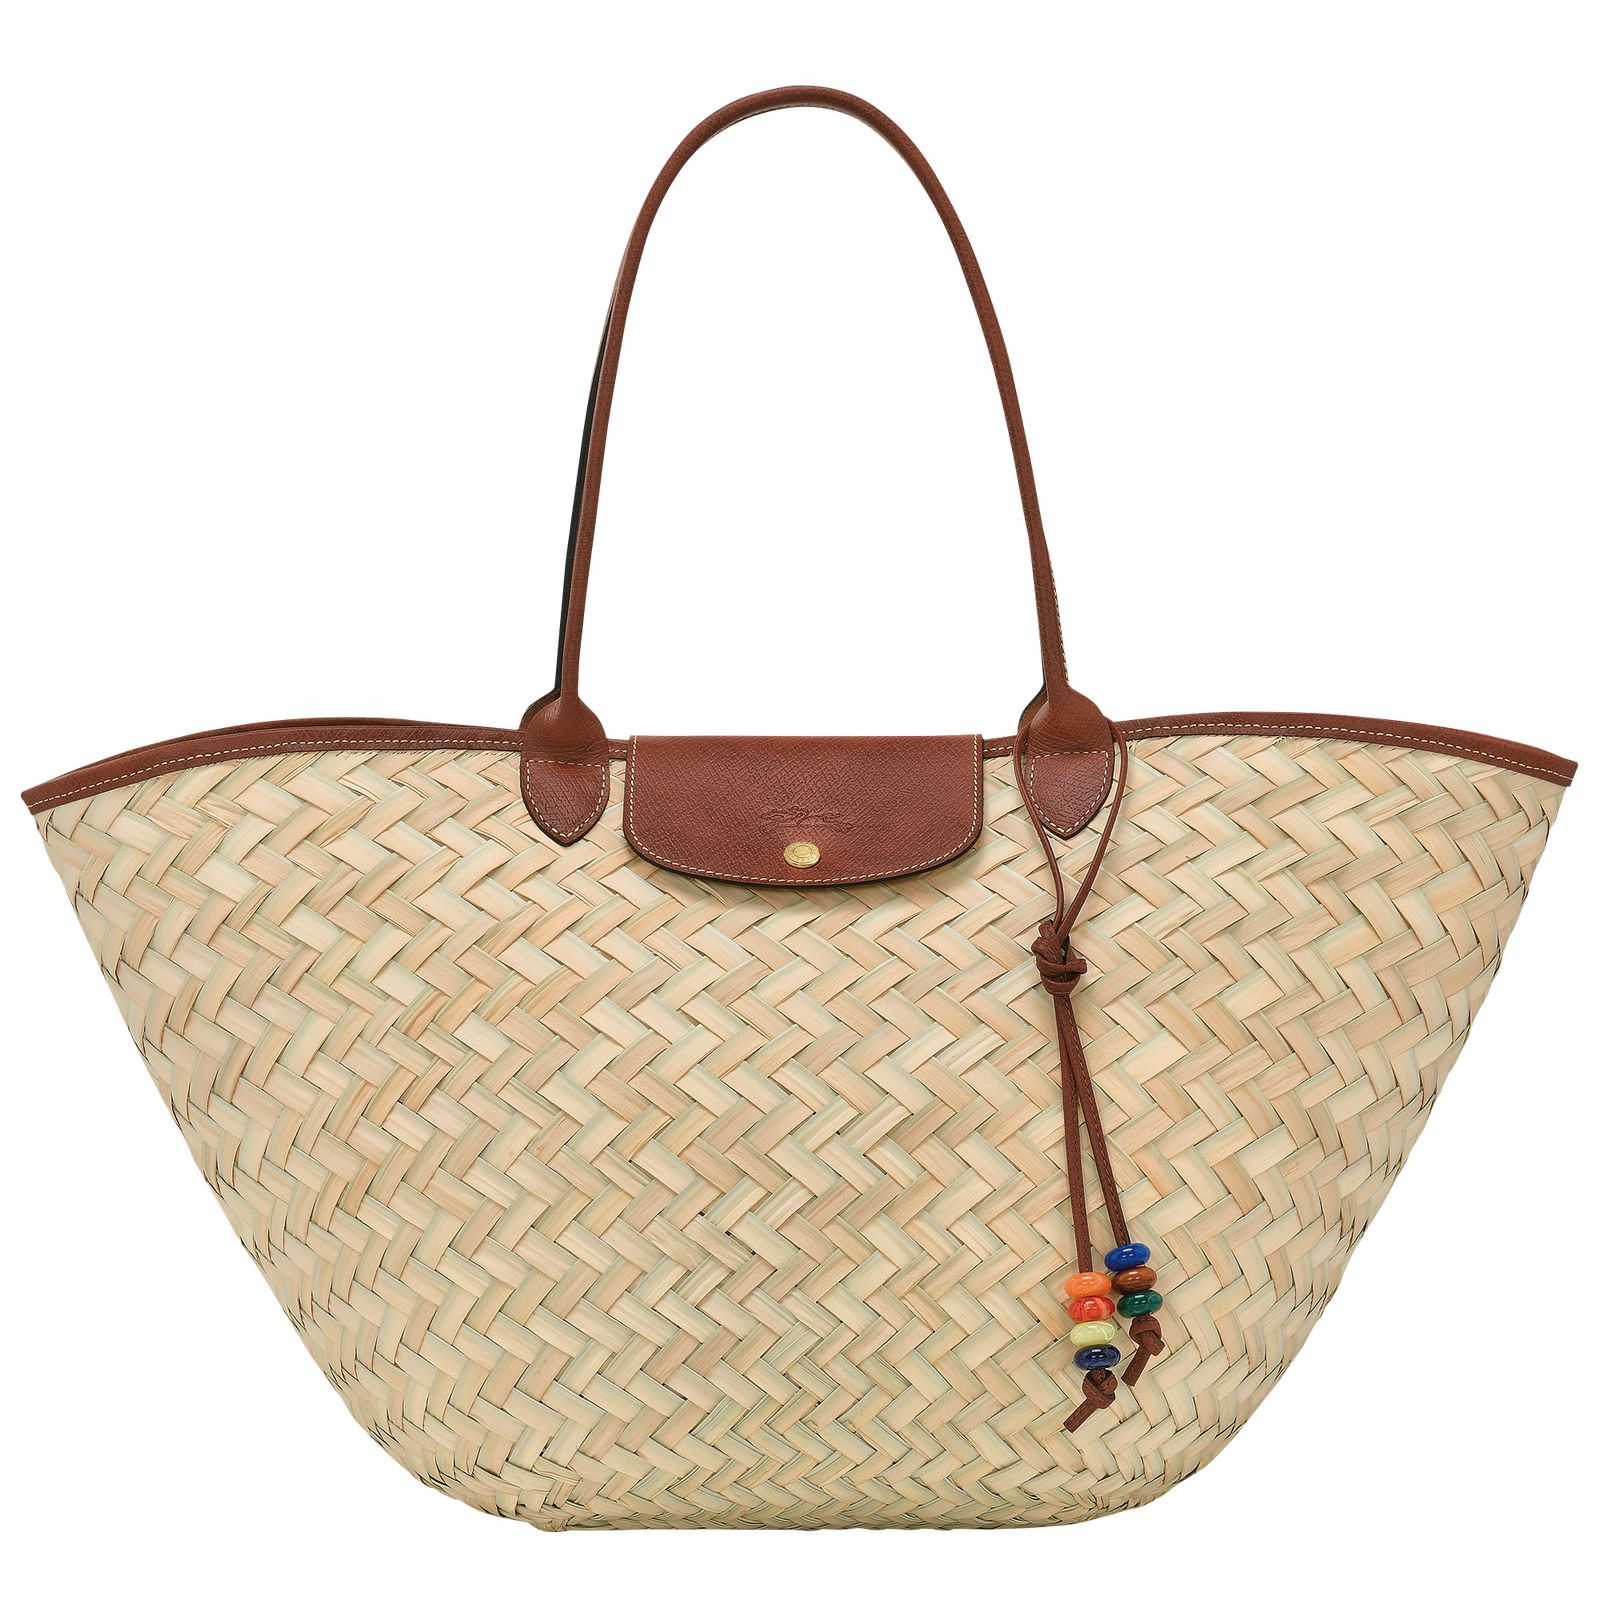 Le Panier Pliage XL Basket bag Brown - OTHER | Longchamp GB | Longchamp